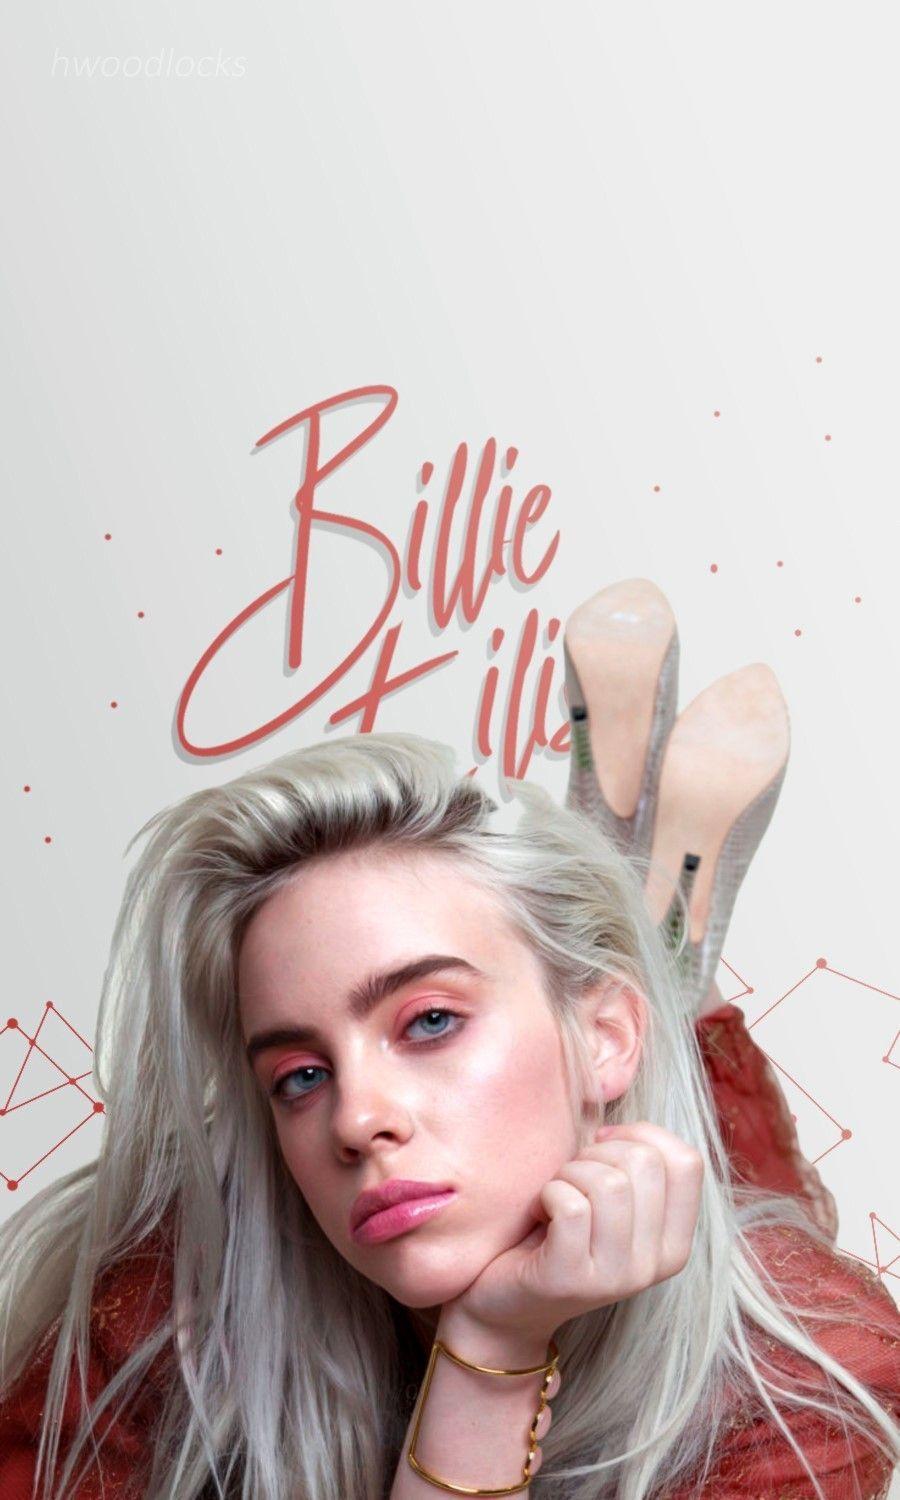 Billie Eilish Wallpaper. Billie eilish